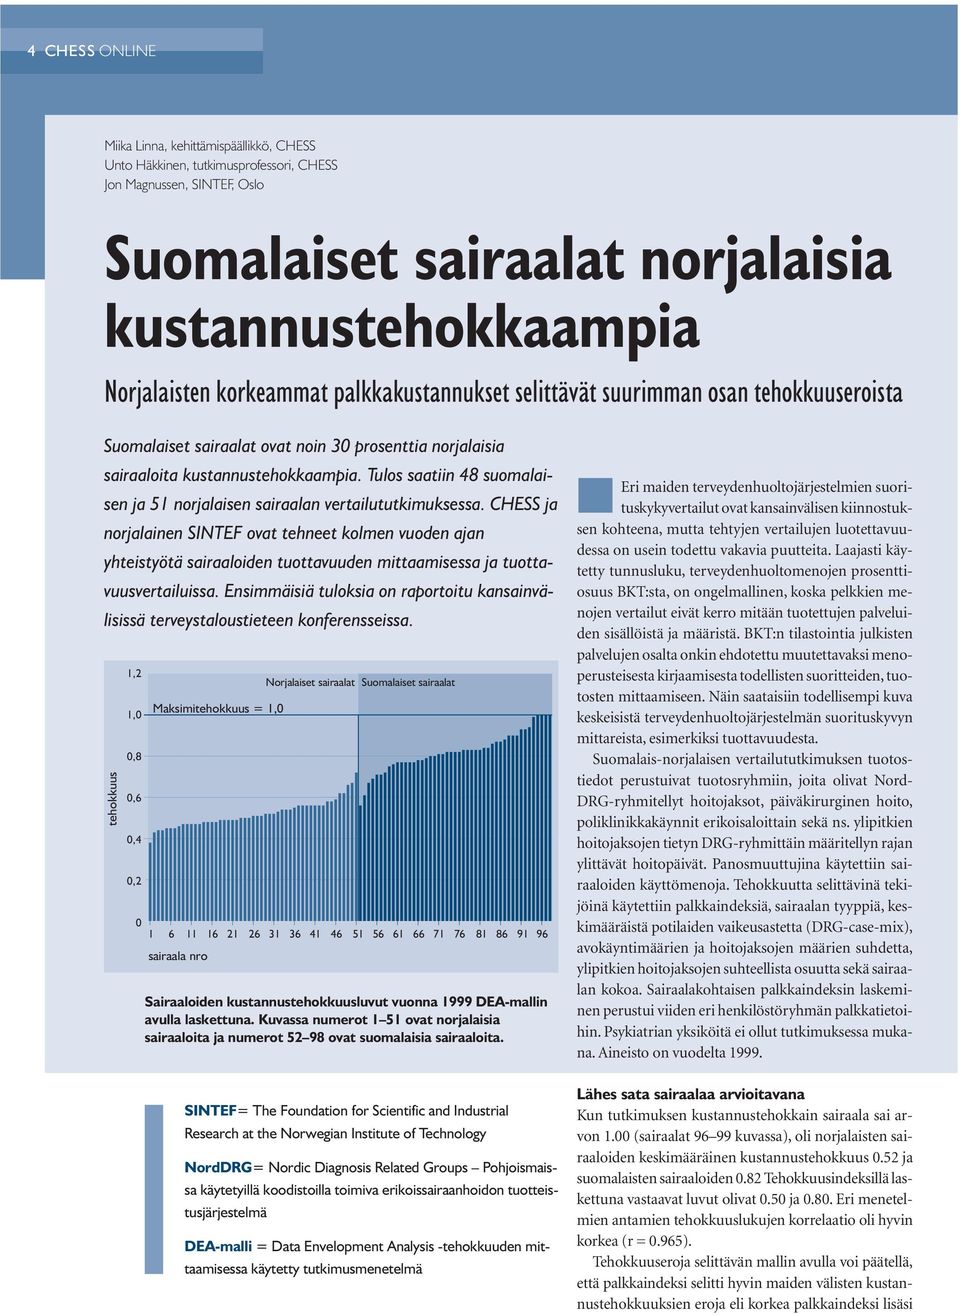 Tulos saatiin 48 suomalaisen ja 51 norjalaisen sairaalan vertailututkimuksessa.